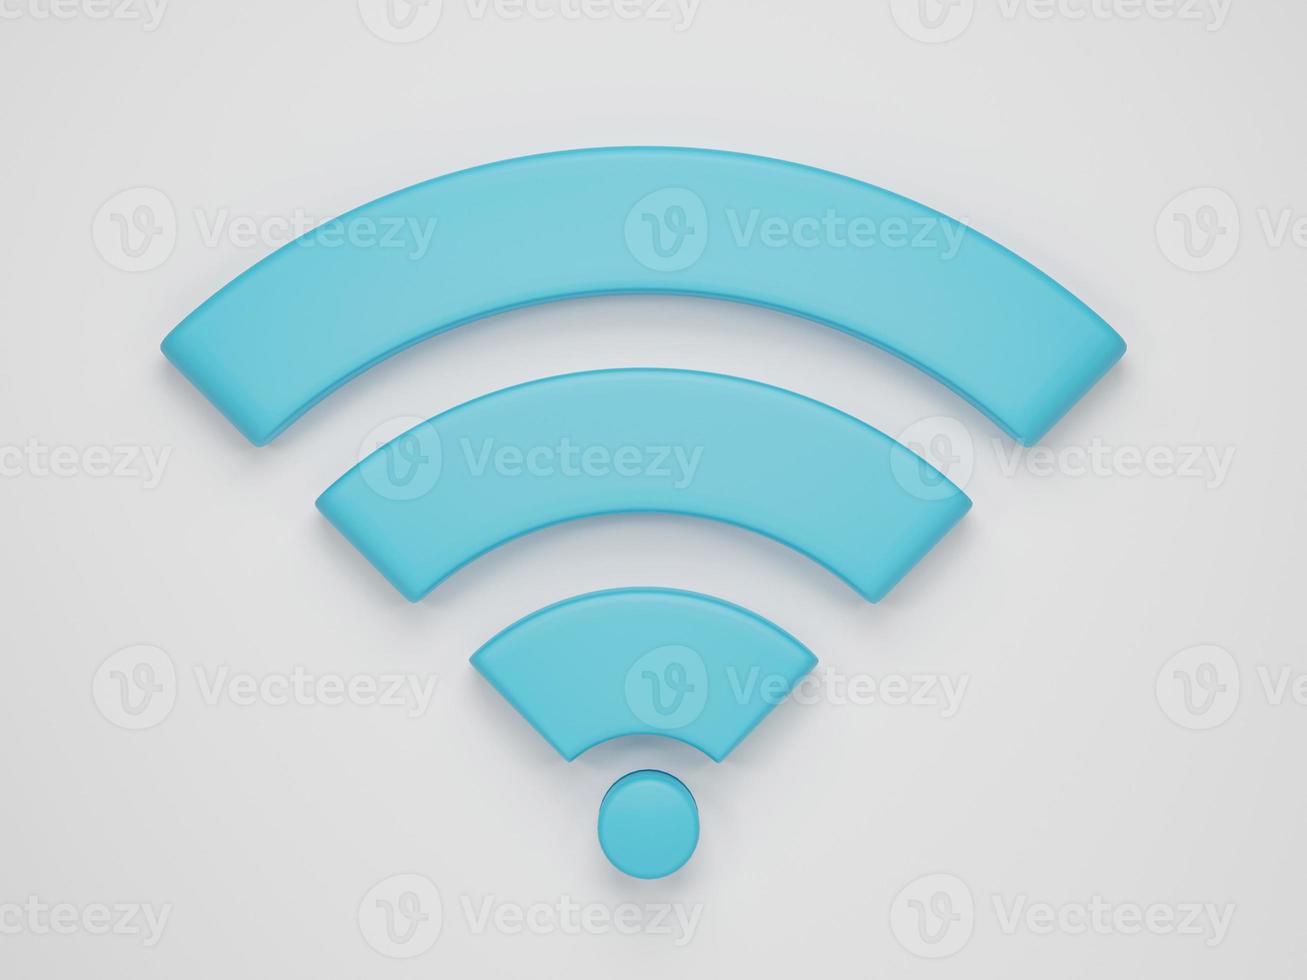 representación 3d, ilustración 3d. icono wi-fi, símbolo de red inalámbrica de internet sobre fondo blanco. concepto mínimo. foto